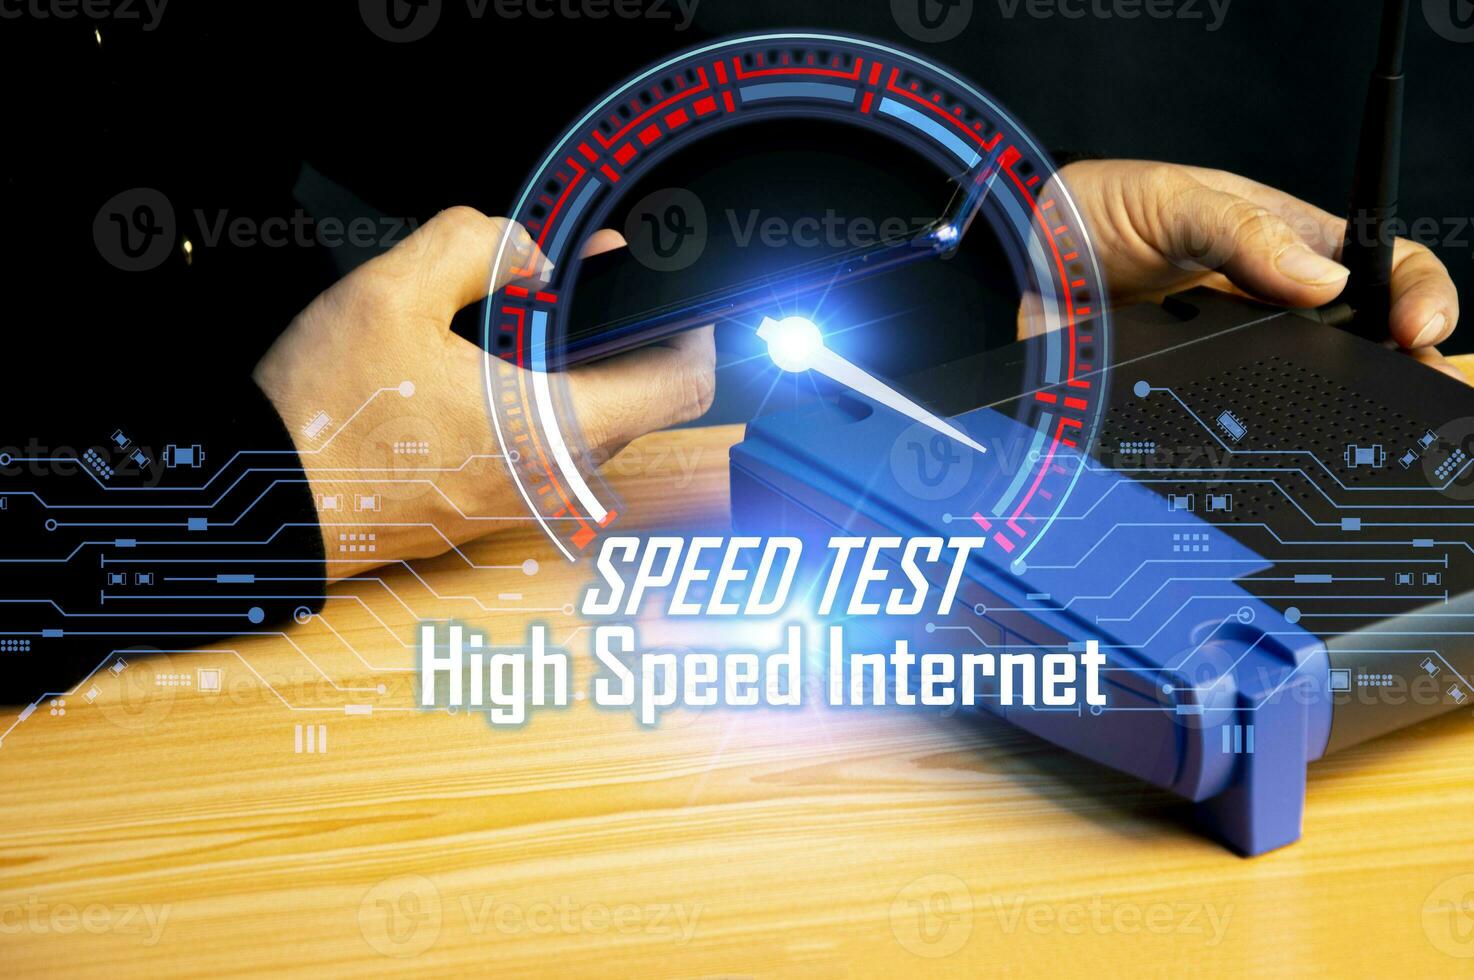 Super schnell Internet Verbindung Geschwindigkeitstest Bandbreite Netzwerk Technologie, Mann mit Internet hoch Geschwindigkeit durch Smartphone und Laptop Computer, 5g Qualität, Geschwindigkeit Optimierung. foto